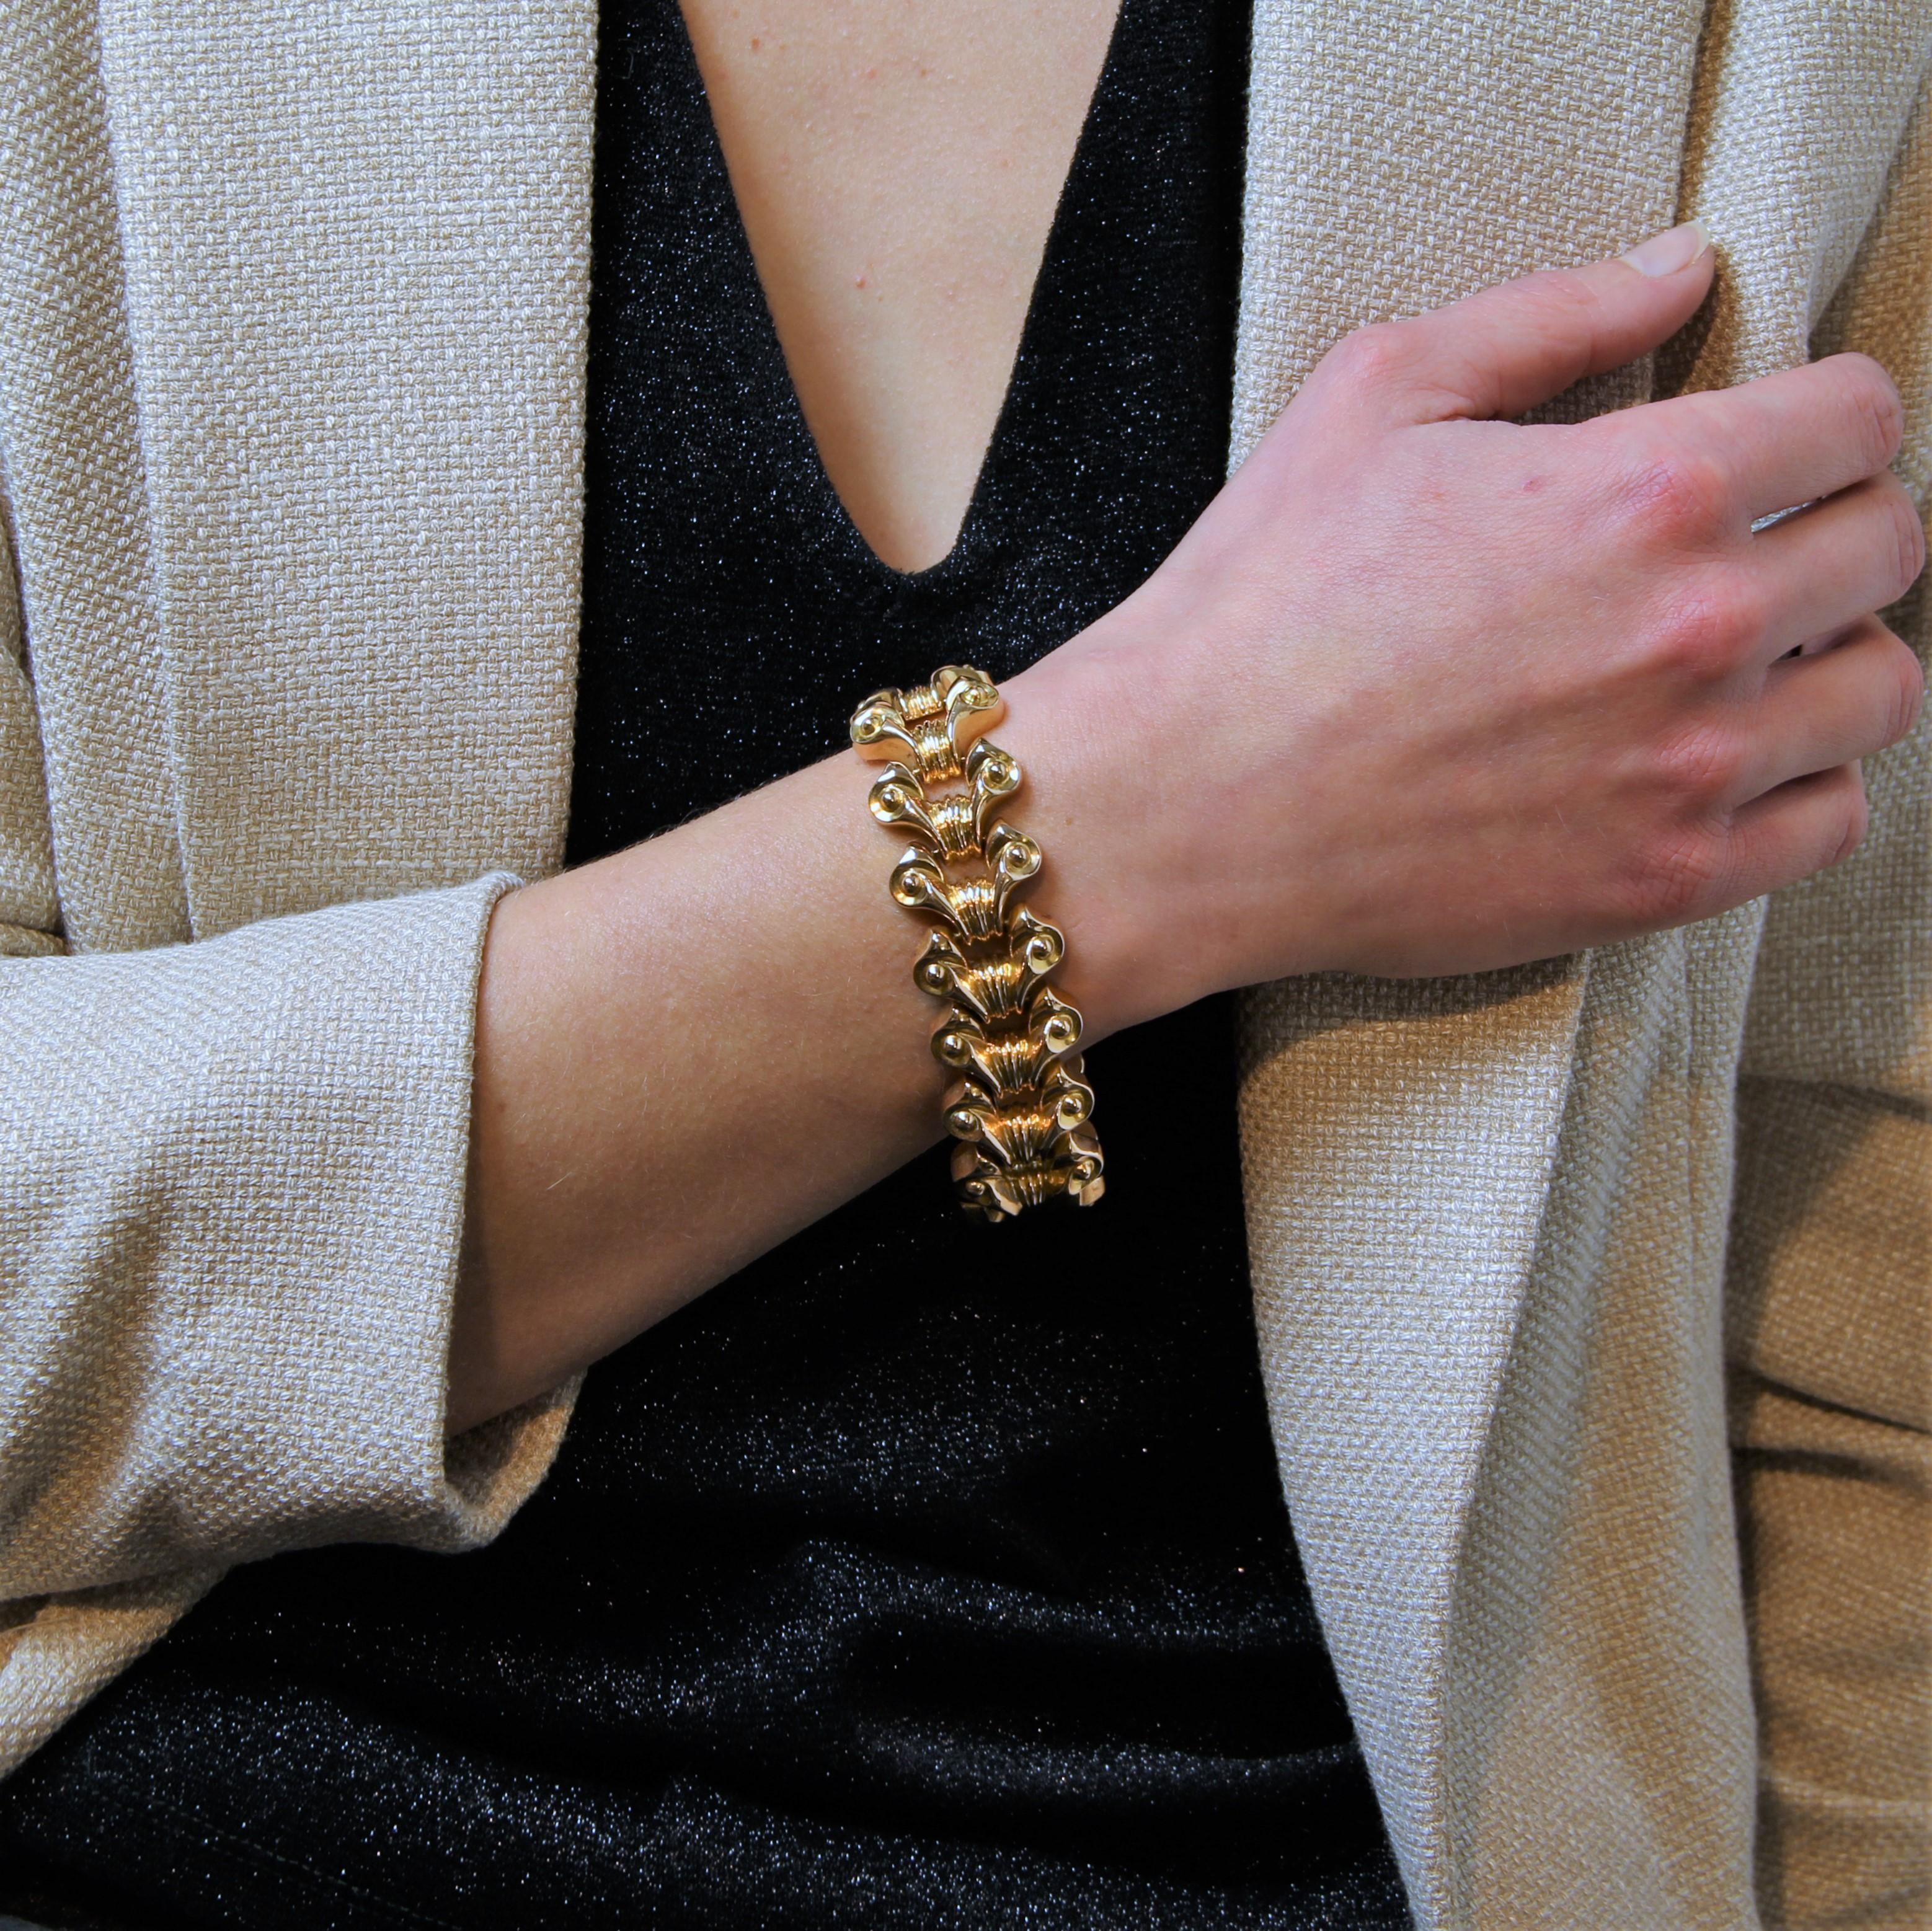 Bracelet en or jaune 18 carats, poinçon tête d'aigle.
Bracelet Tank gold, il est composé de motifs en forme de nœuds dans un décor de lignes et de perles dorées, attachées les unes aux autres. Le fermoir est à cliquet avec sécurité